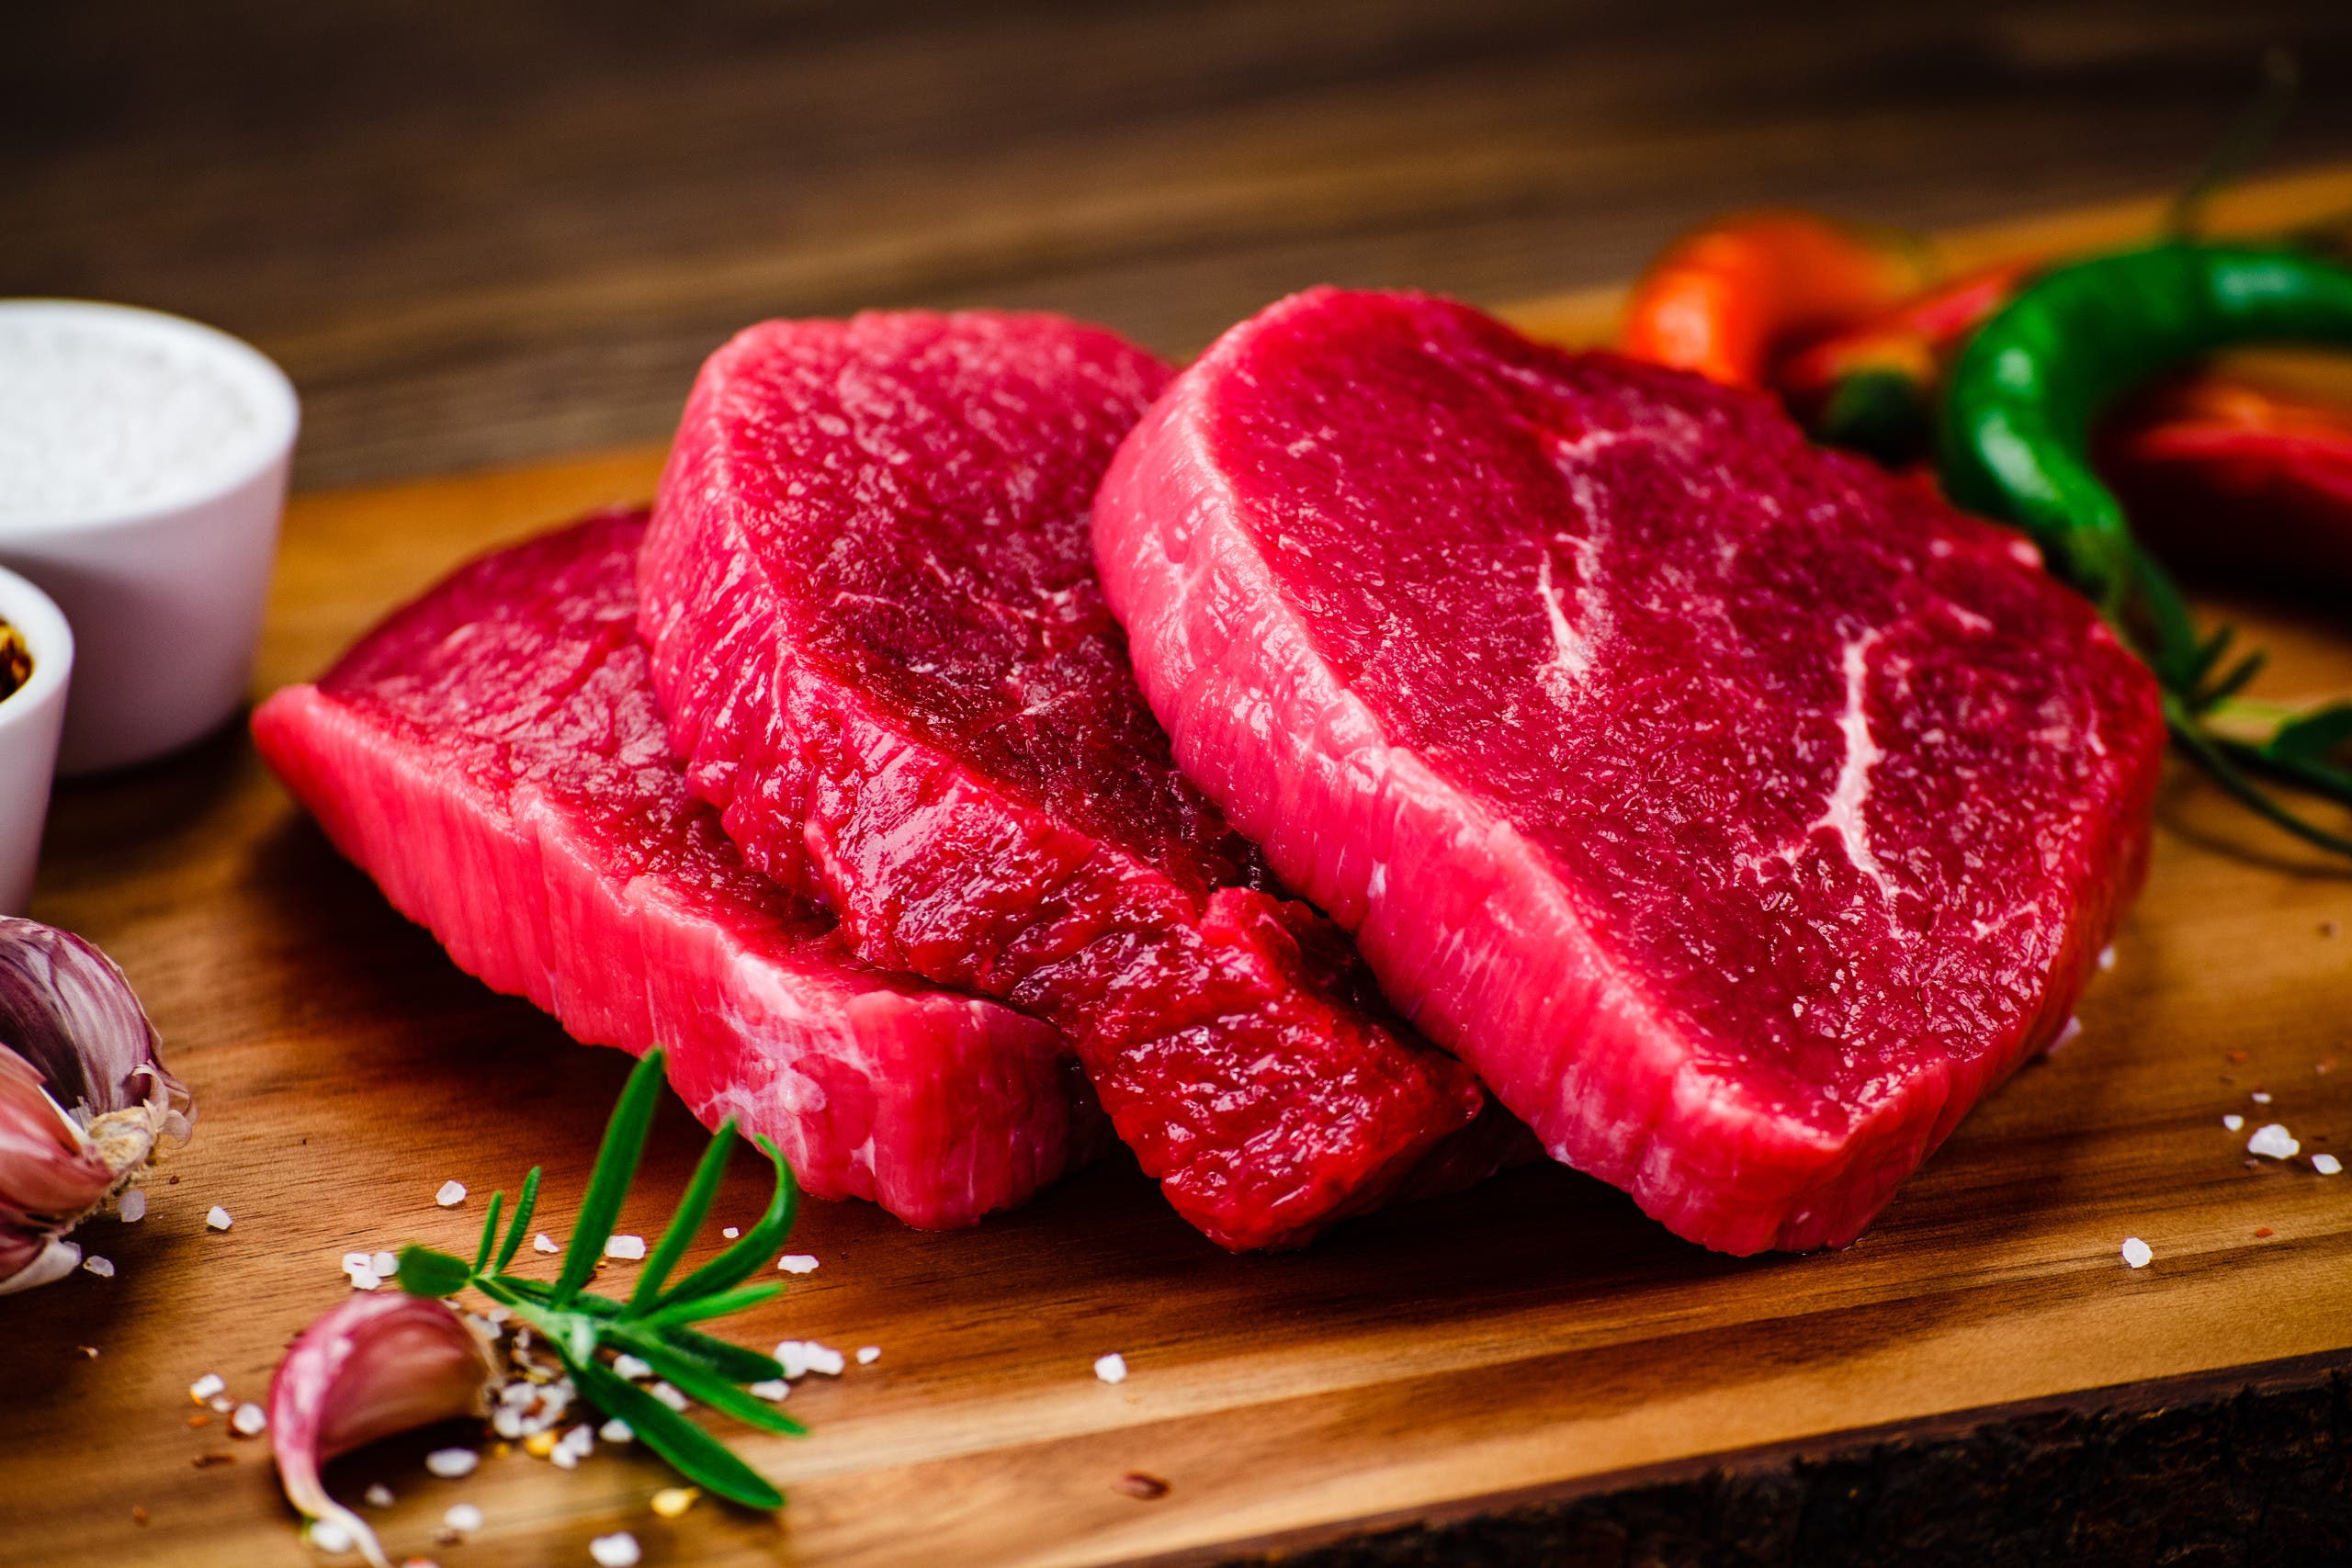 تتميز بنكهة تضاهي اللحوم وكأنك تمضغ شرائح اللحم.. مع تزايد الطلب على اللحوم النباتية ما هو تركيبها ولماذا يقبل الناس عليها؟